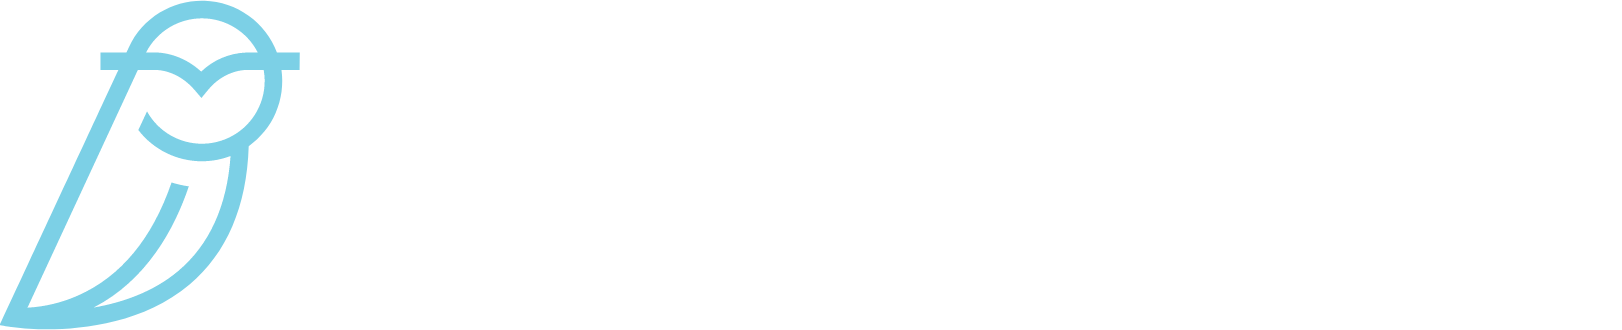 Blue Owl Capital logo grand pour les fonds sombres (PNG transparent)